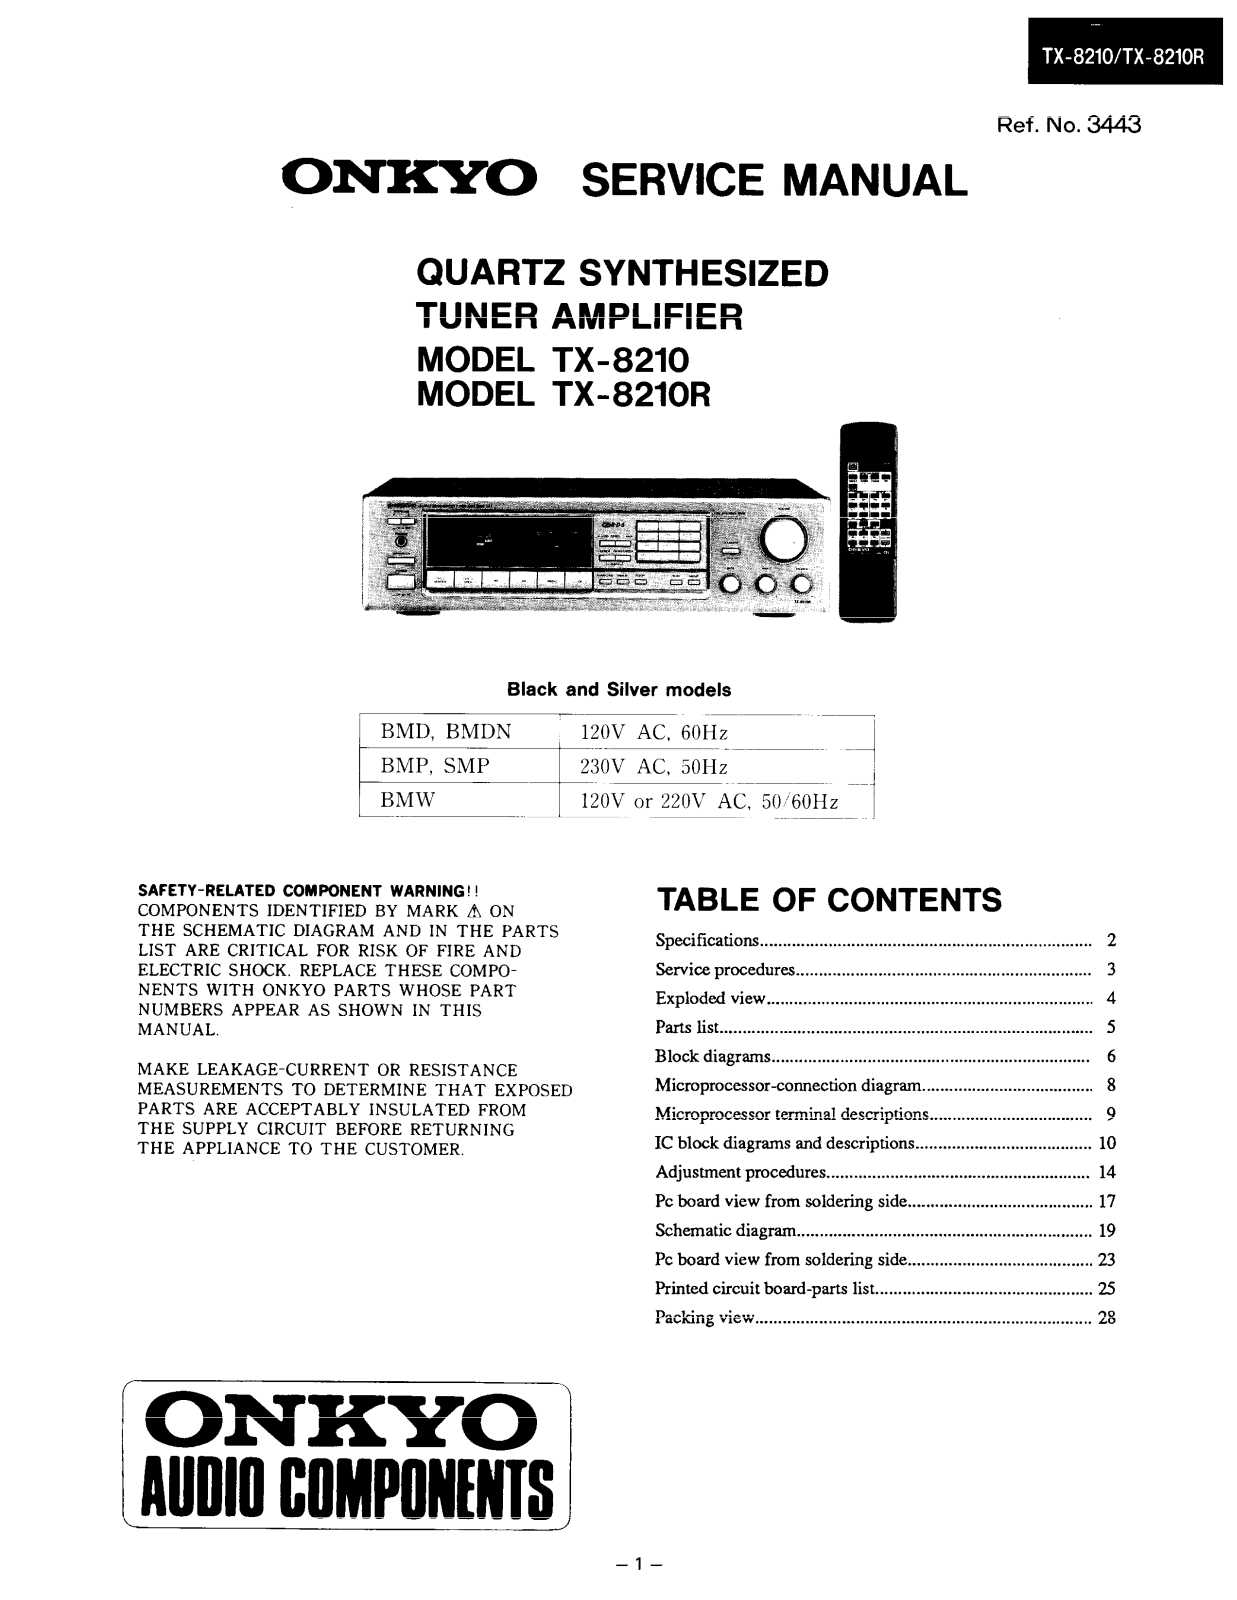 Onkyo TX-8210 Service manual